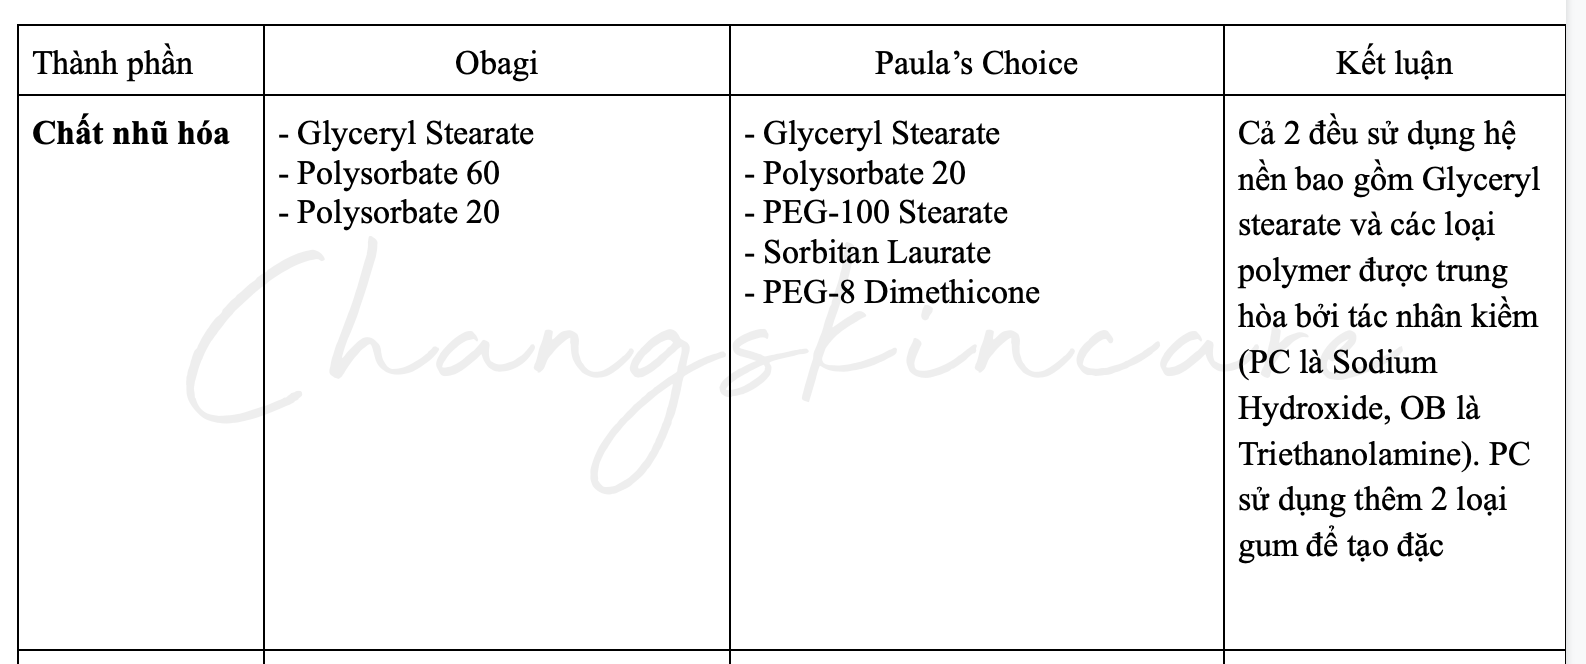 so sánh retinol paula's choice và obagi